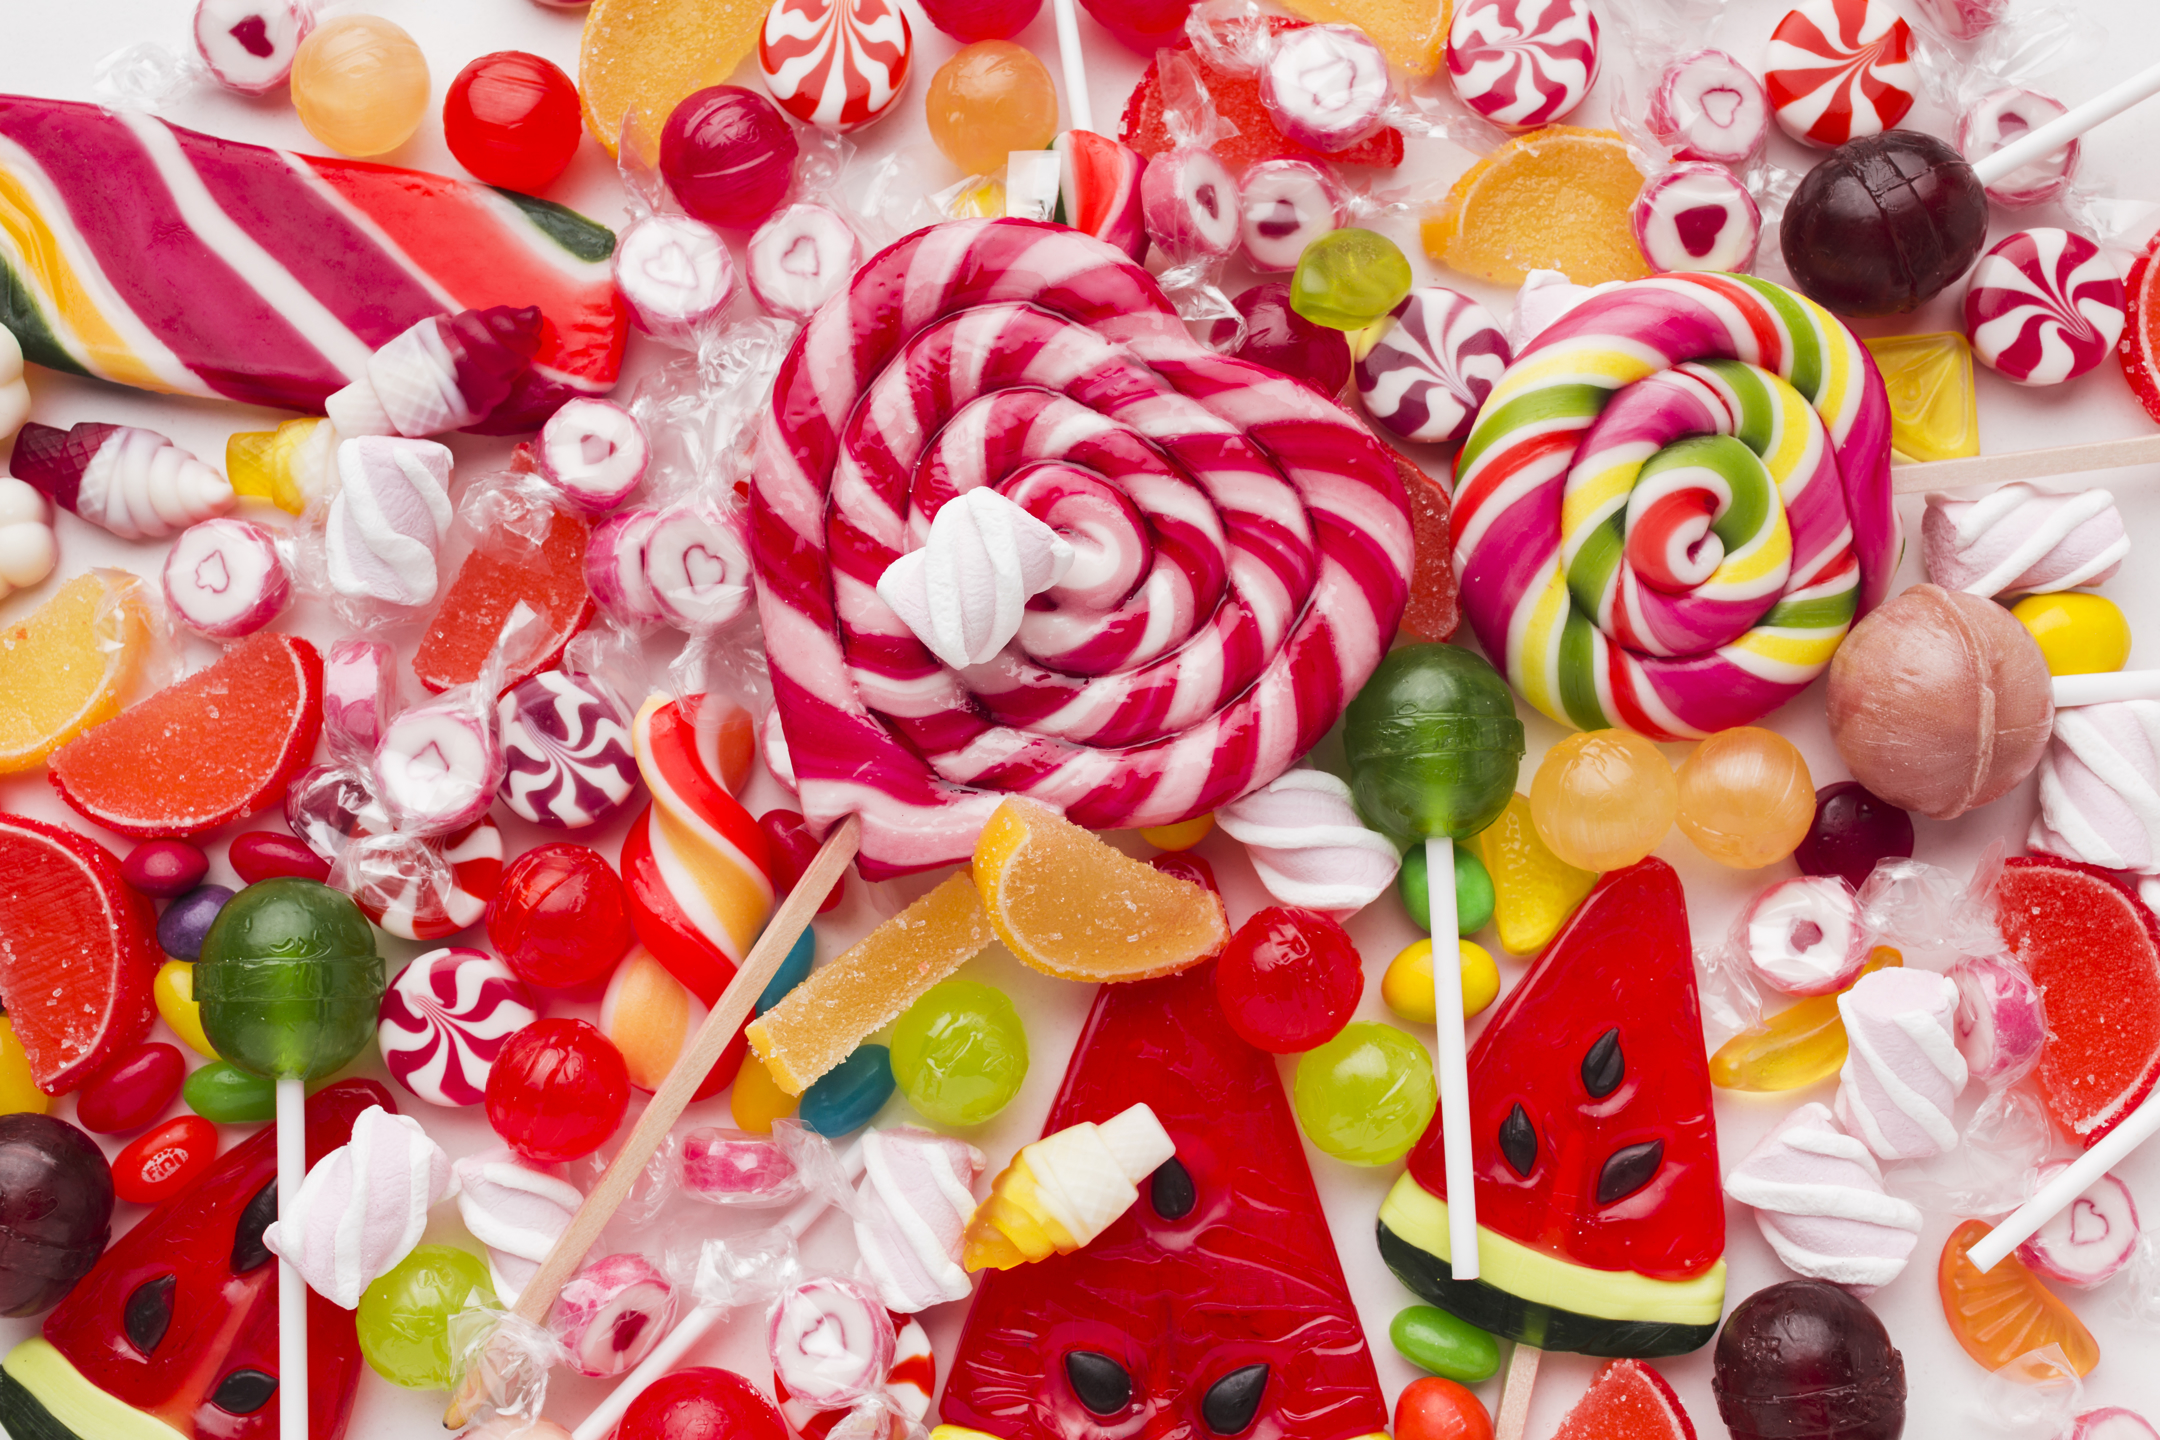 Как открыть конфетный бизнес - план для открытия магазина сладостей, как оформить, какие документы нужны - GrandActive